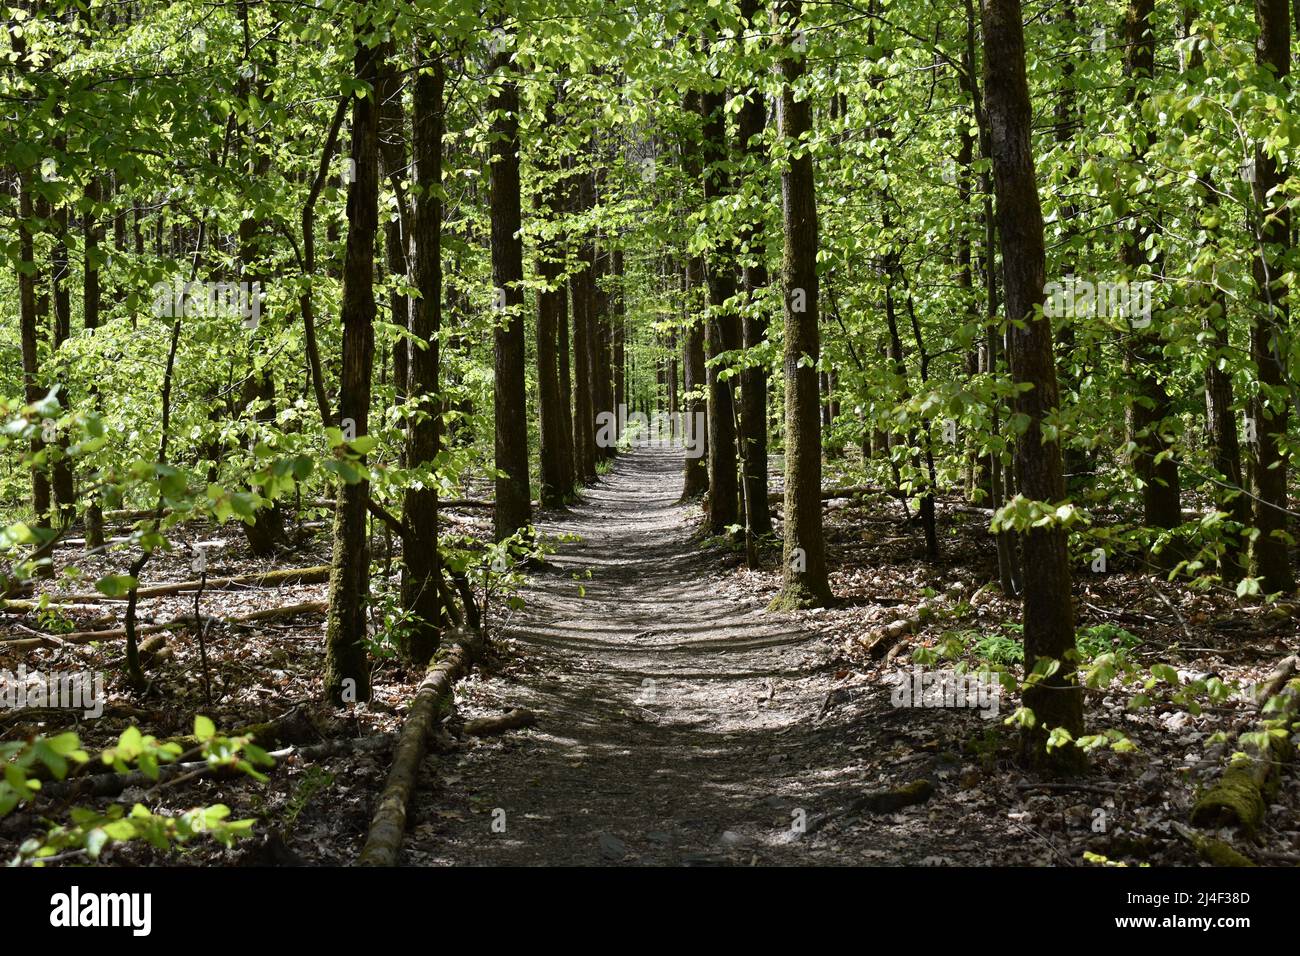 Wald, Weg, Grün, Frühling, Grün, Blätter, der Weg nach vorne, Allee, Dickicht, Woods, Sticks, Stämme, Licht und Schatten, Natur, Symmetrie, Bäume Stock Photo